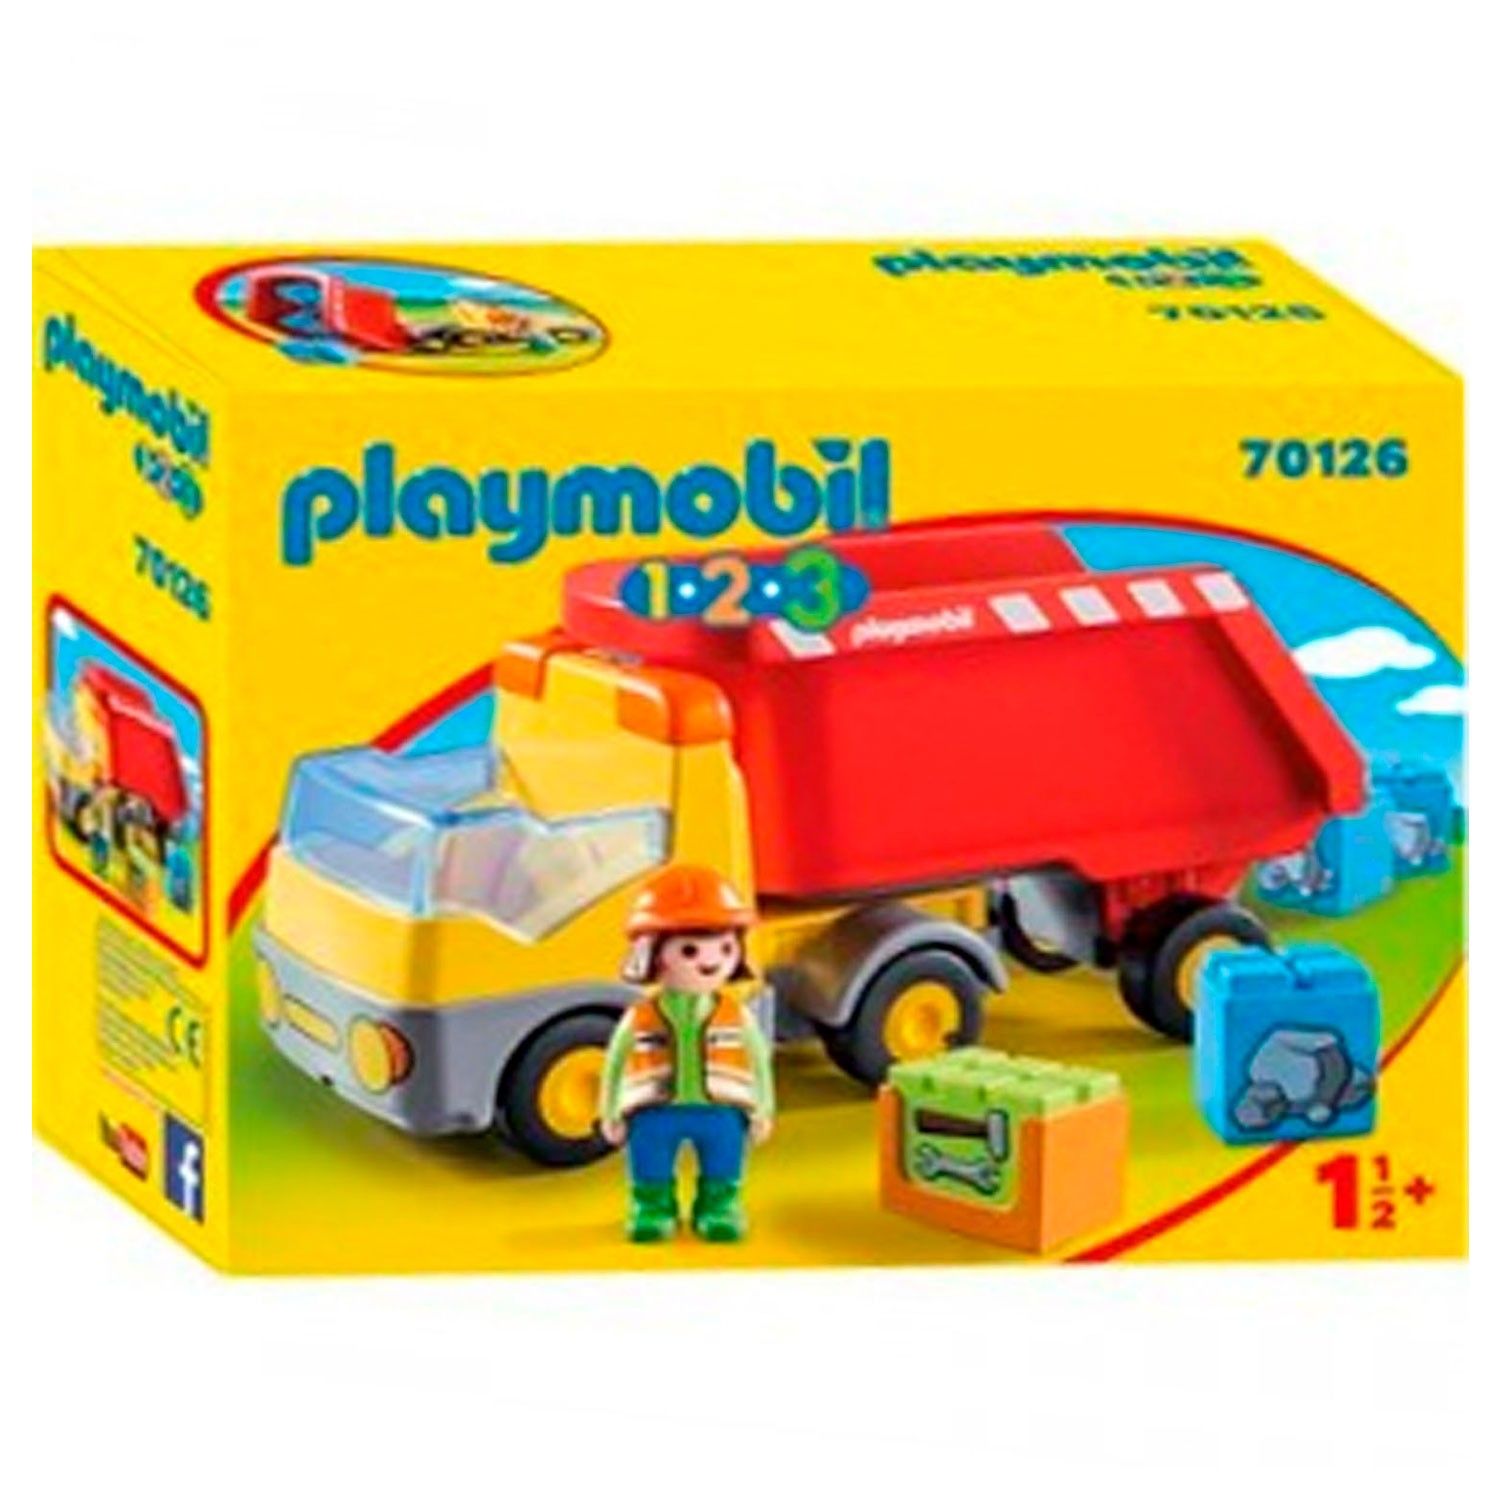 70179 - Playmobil 1.2.3 - Train avec passagers et circuit